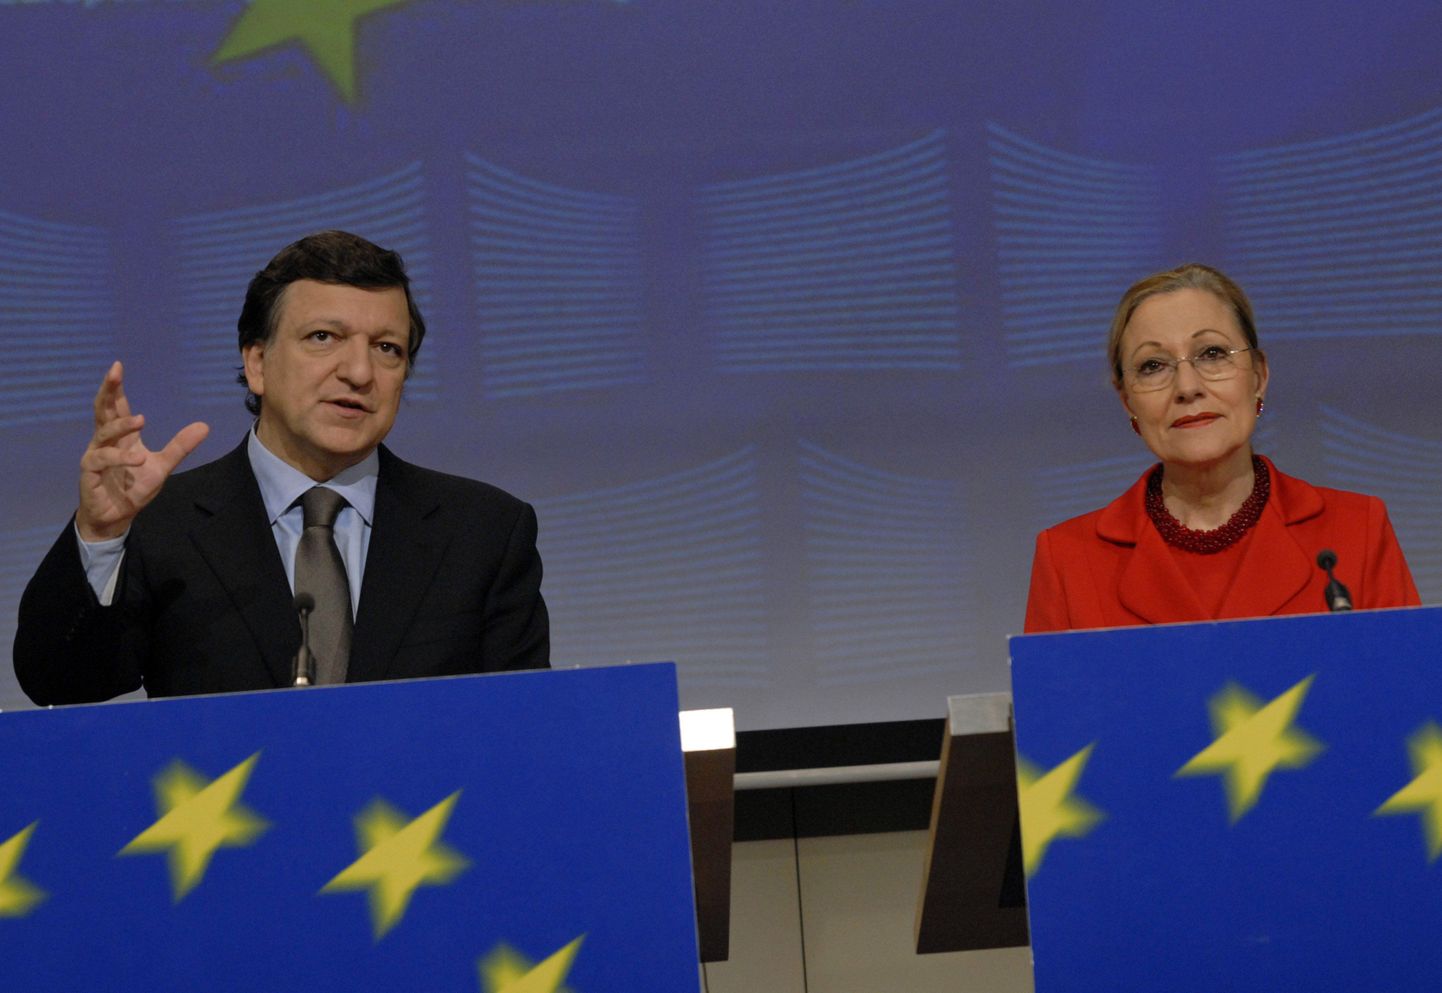 Euroopa Komisjoni president José Manuel Barroso ja välissuhete volinik Benita Ferrero-Waldner tutvustamas ajakirjanikele uut idapartnerluskava.